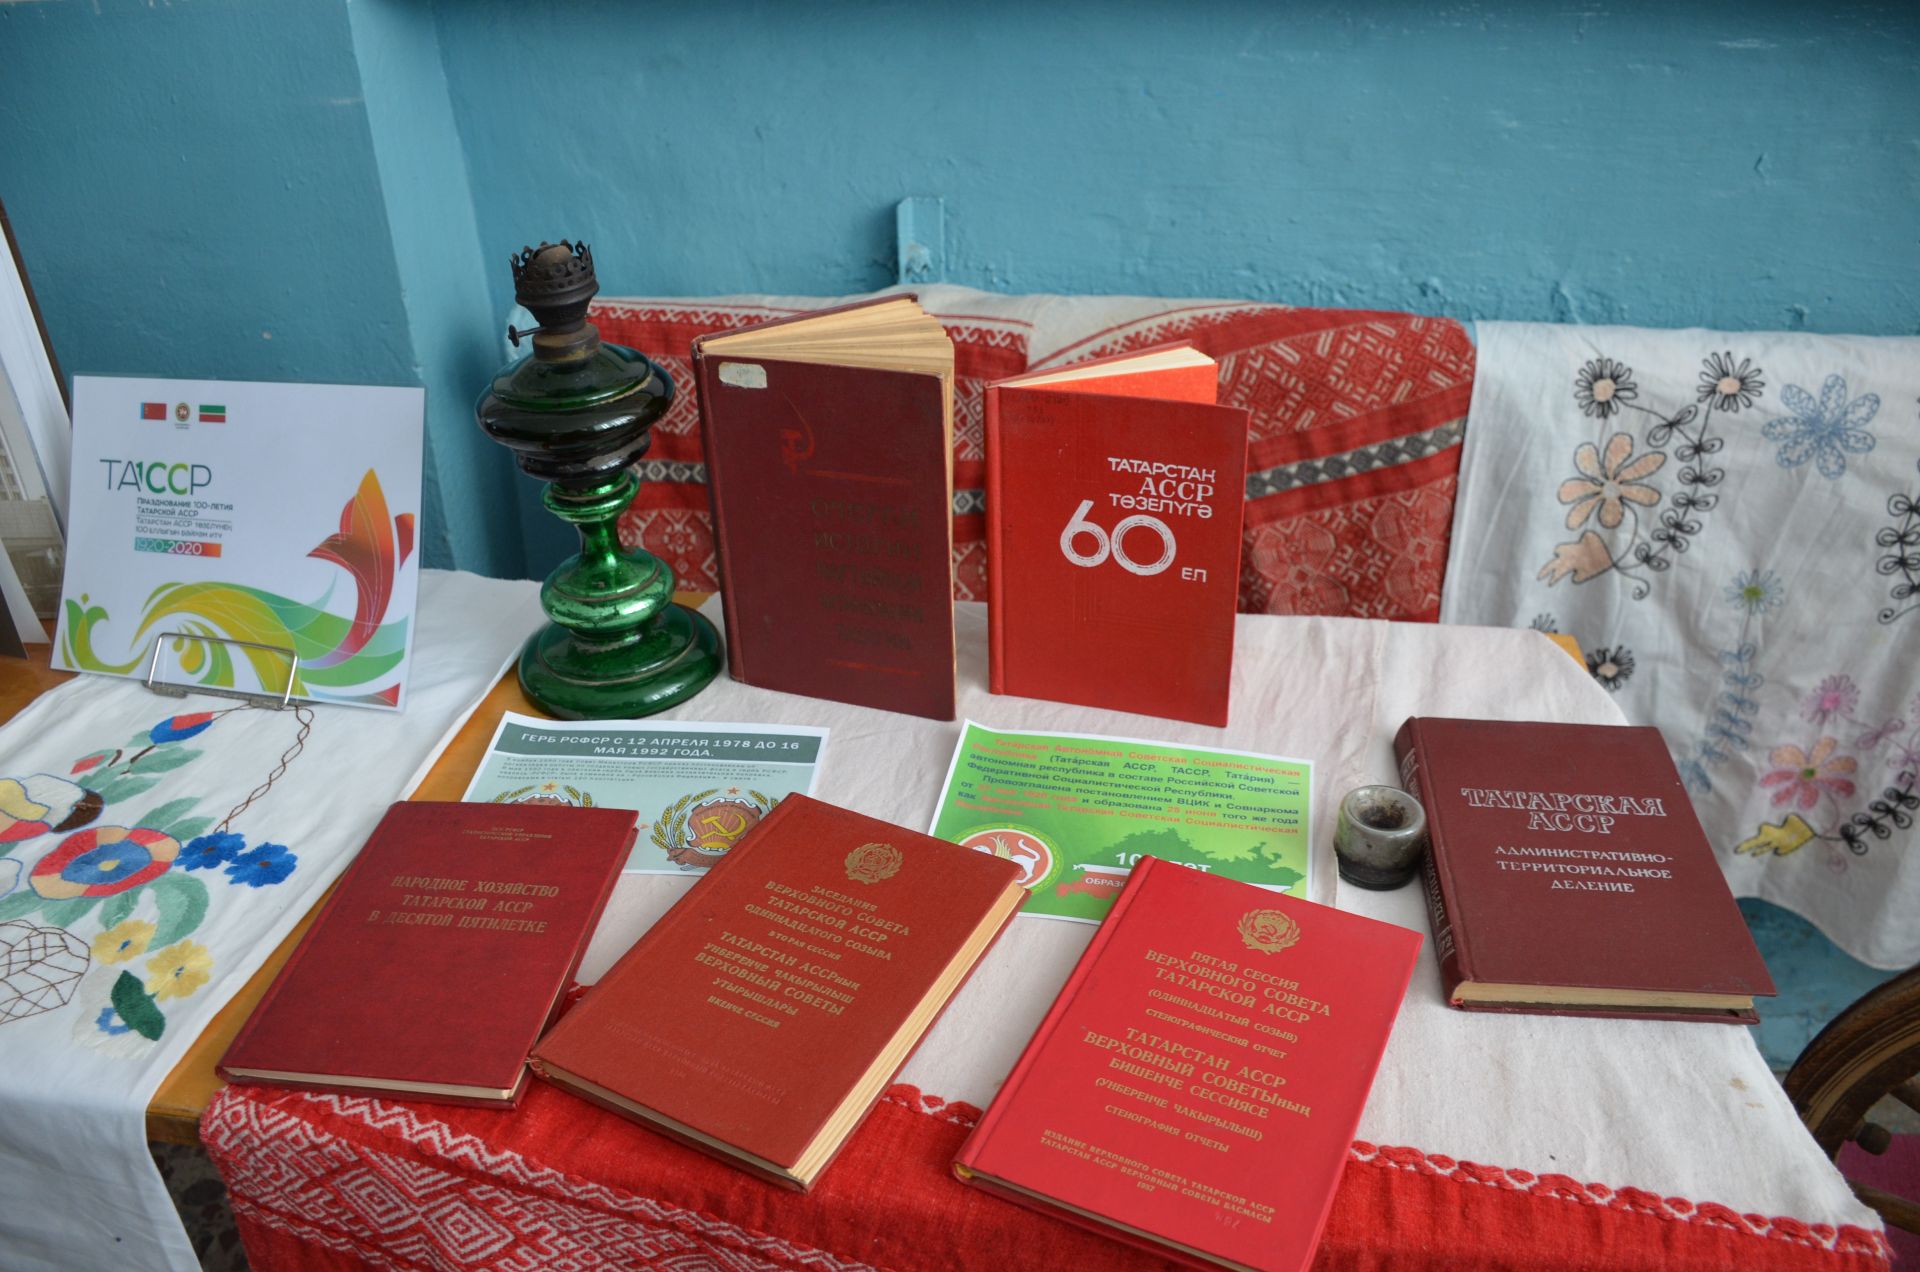 В Агрызском районе работает выставка, посвященная 100-летию ТАССР